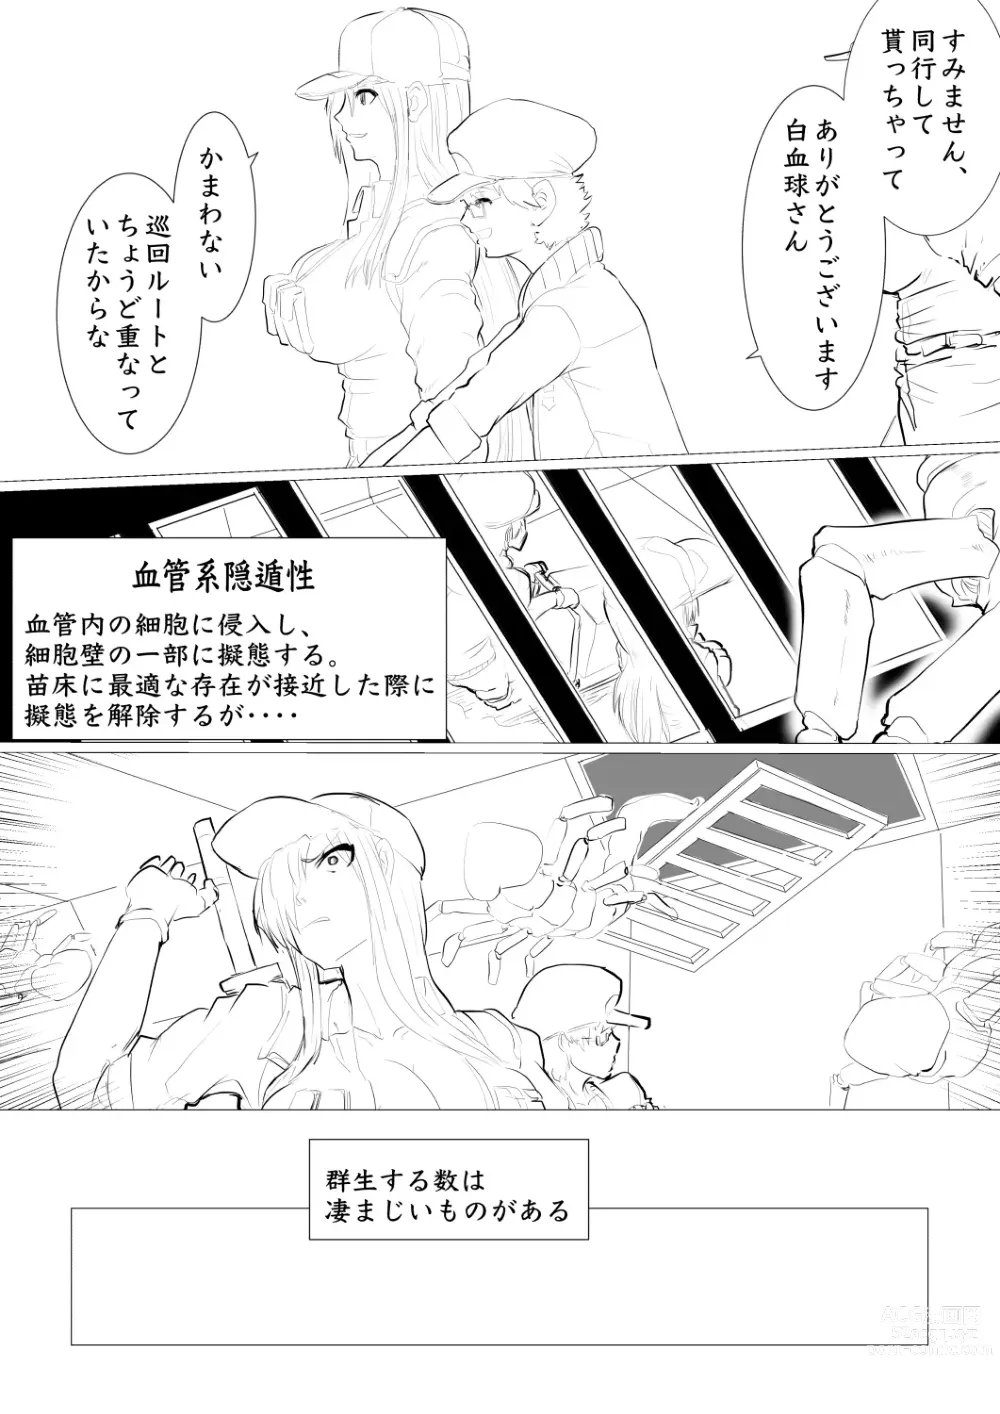 Page 2 of doujinshi Hakkekkyuu ga Byougen-sei-han Saikin ni Nabura Rerutsu!